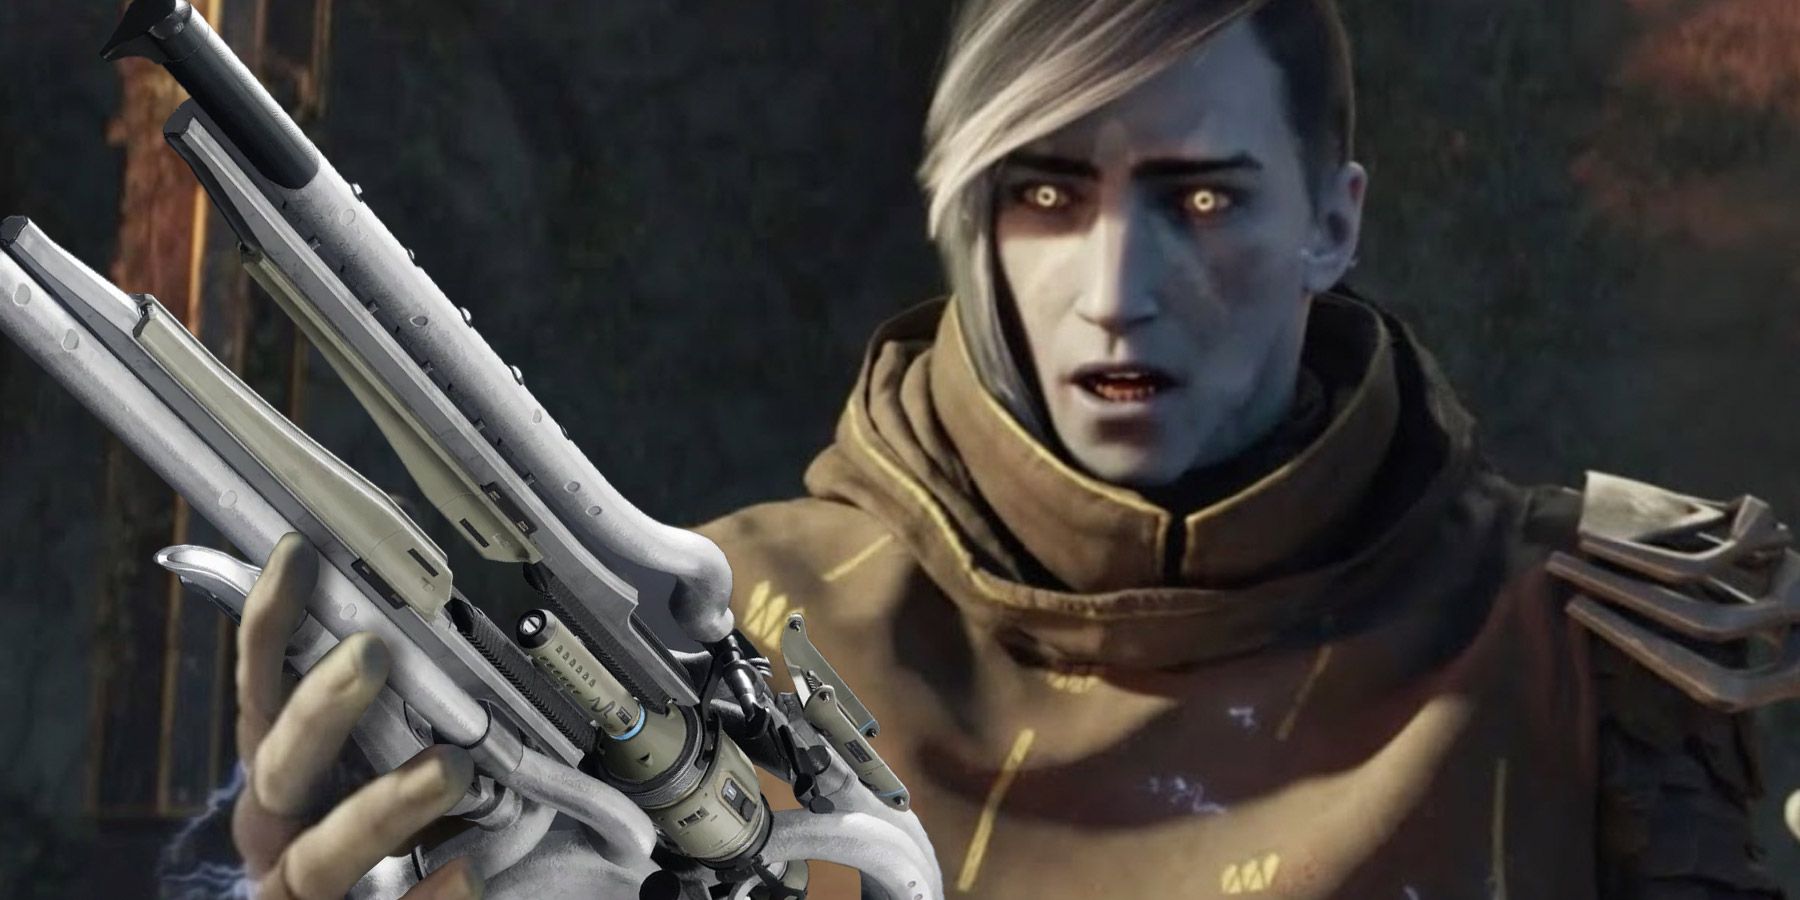 Η εποχή του Destiny 2 του Lost επιτυγχάνει να εξαργυρώσει το Uldren με το σκήπτρο του Ager